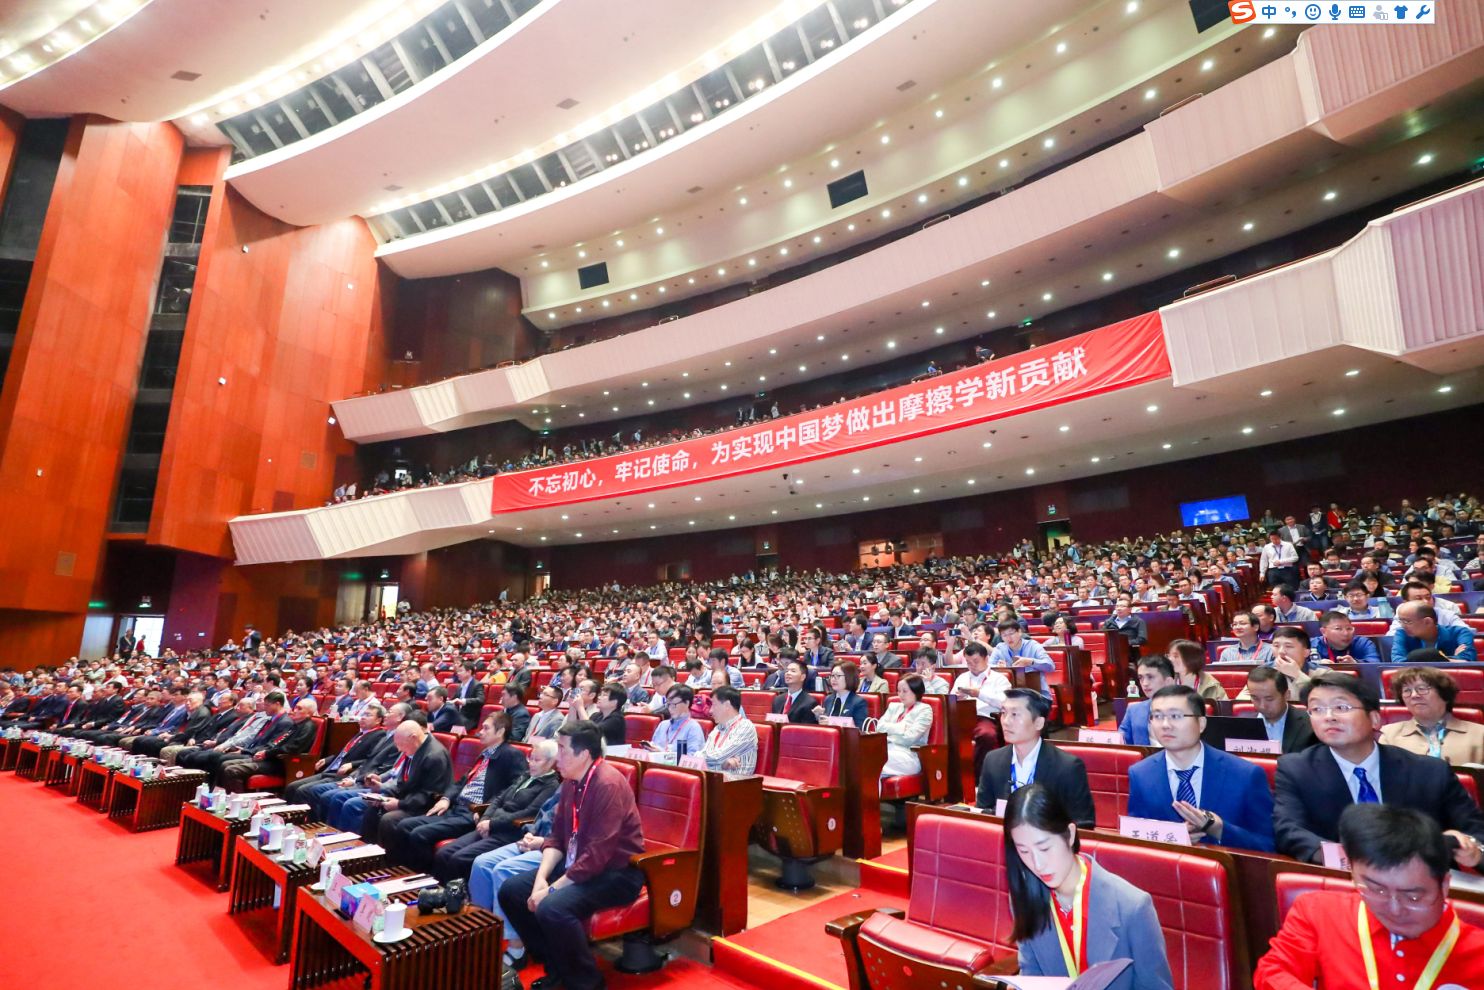 第八届中国企业润滑管理高峰论坛暨第二届中国机械工业设备智能润滑技术大会